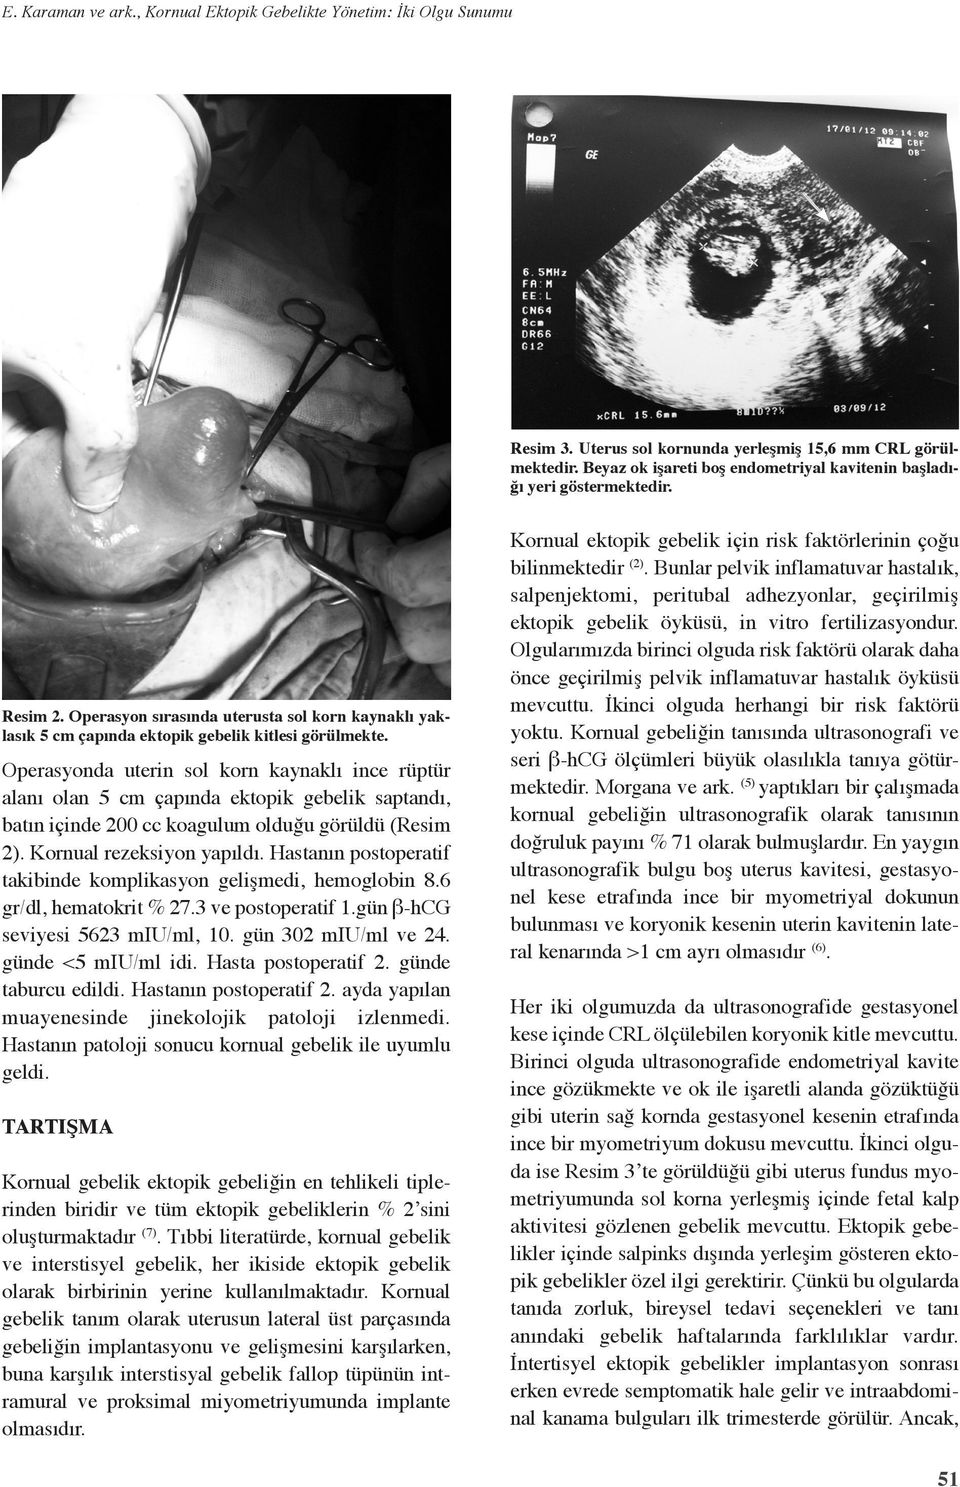 Operasyonda uterin sol korn kaynaklı ince rüptür alanı olan 5 cm çapında ektopik gebelik saptandı, batın içinde 200 cc koagulum olduğu görüldü (Resim 2). Kornual rezeksiyon yapıldı.